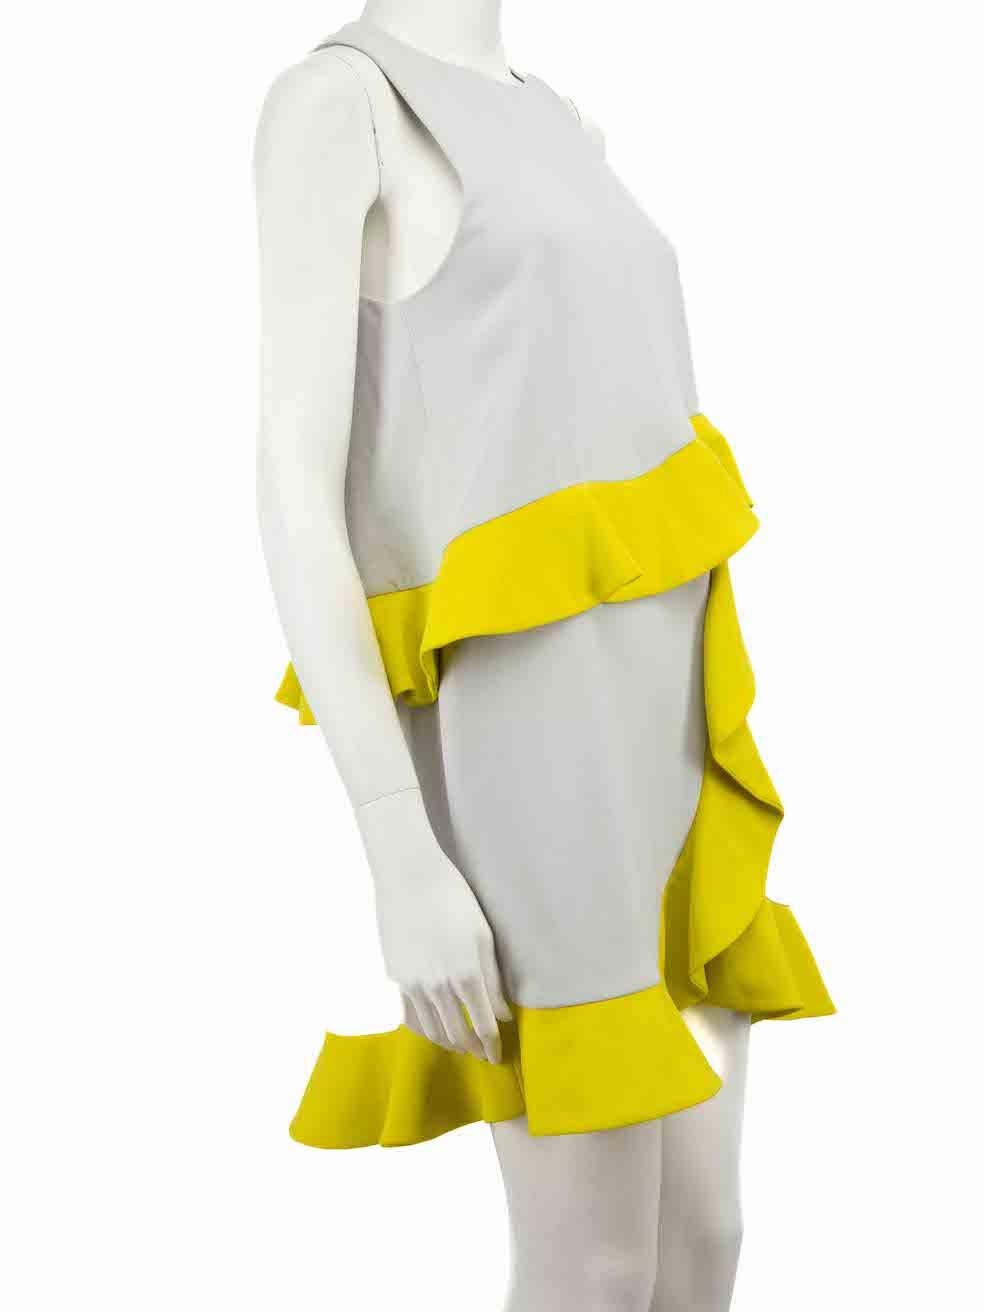 CONDIT ist sehr gut. Kaum sichtbare Abnutzungserscheinungen am Kleid sind bei diesem gebrauchten MSGM Designer-Wiederverkaufsartikel zu erkennen.
 
 Einzelheiten
 Grau
 Polyester
 Minikleid
 Rundhalsausschnitt
 Gelbe Kontrastrüschen als Akzent
